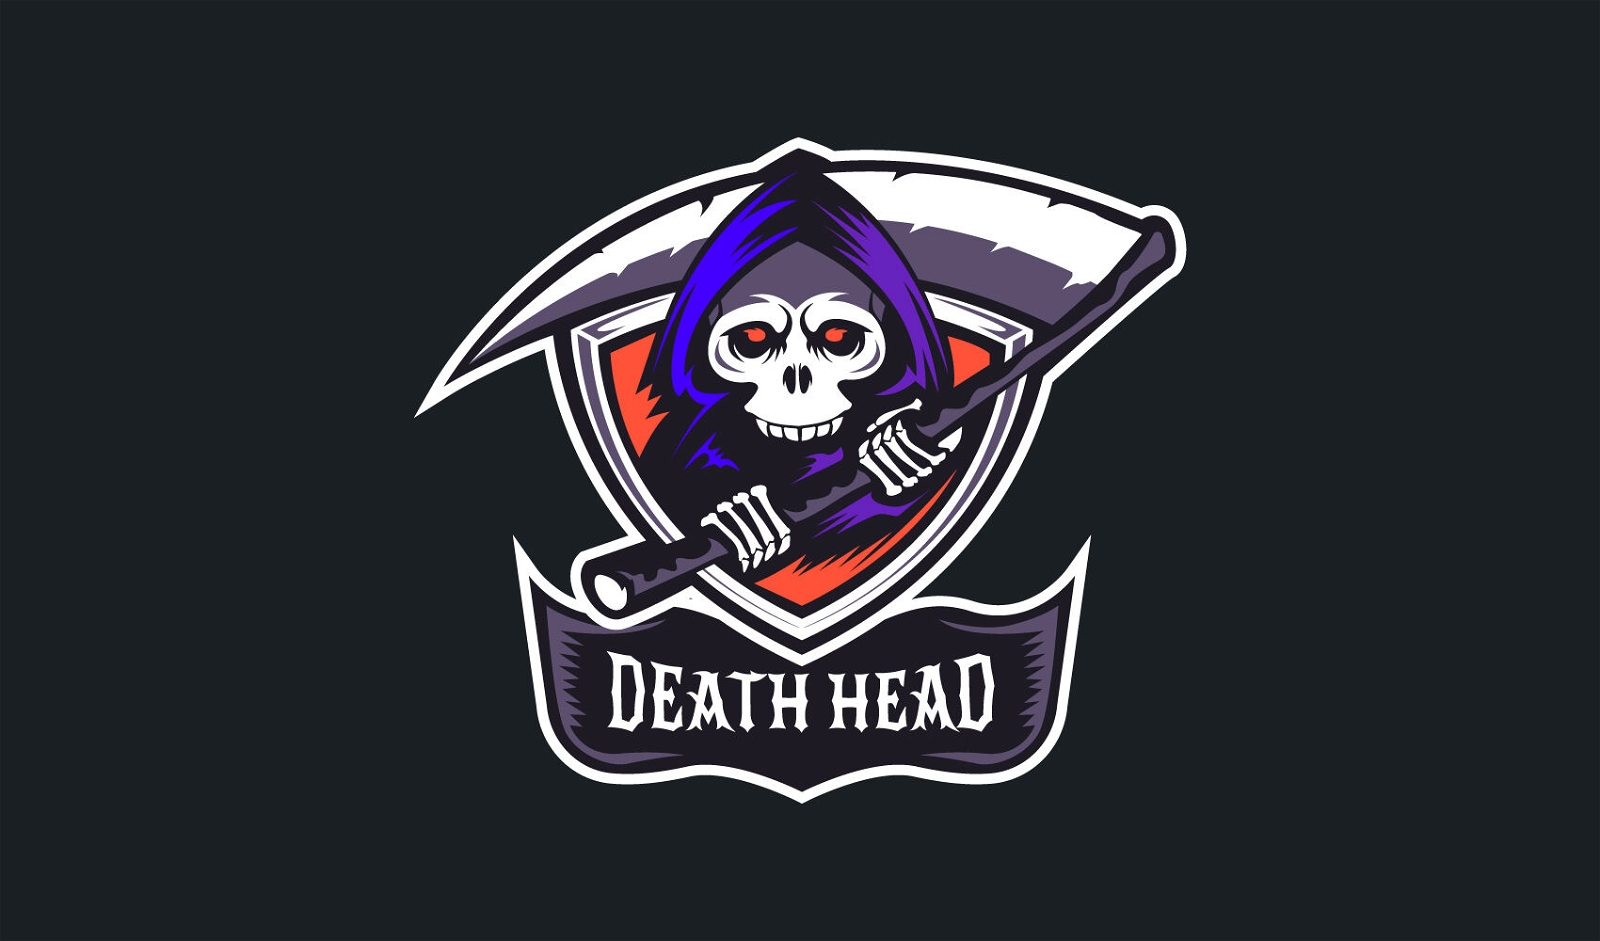 Plantilla de logotipo de parca de muerte